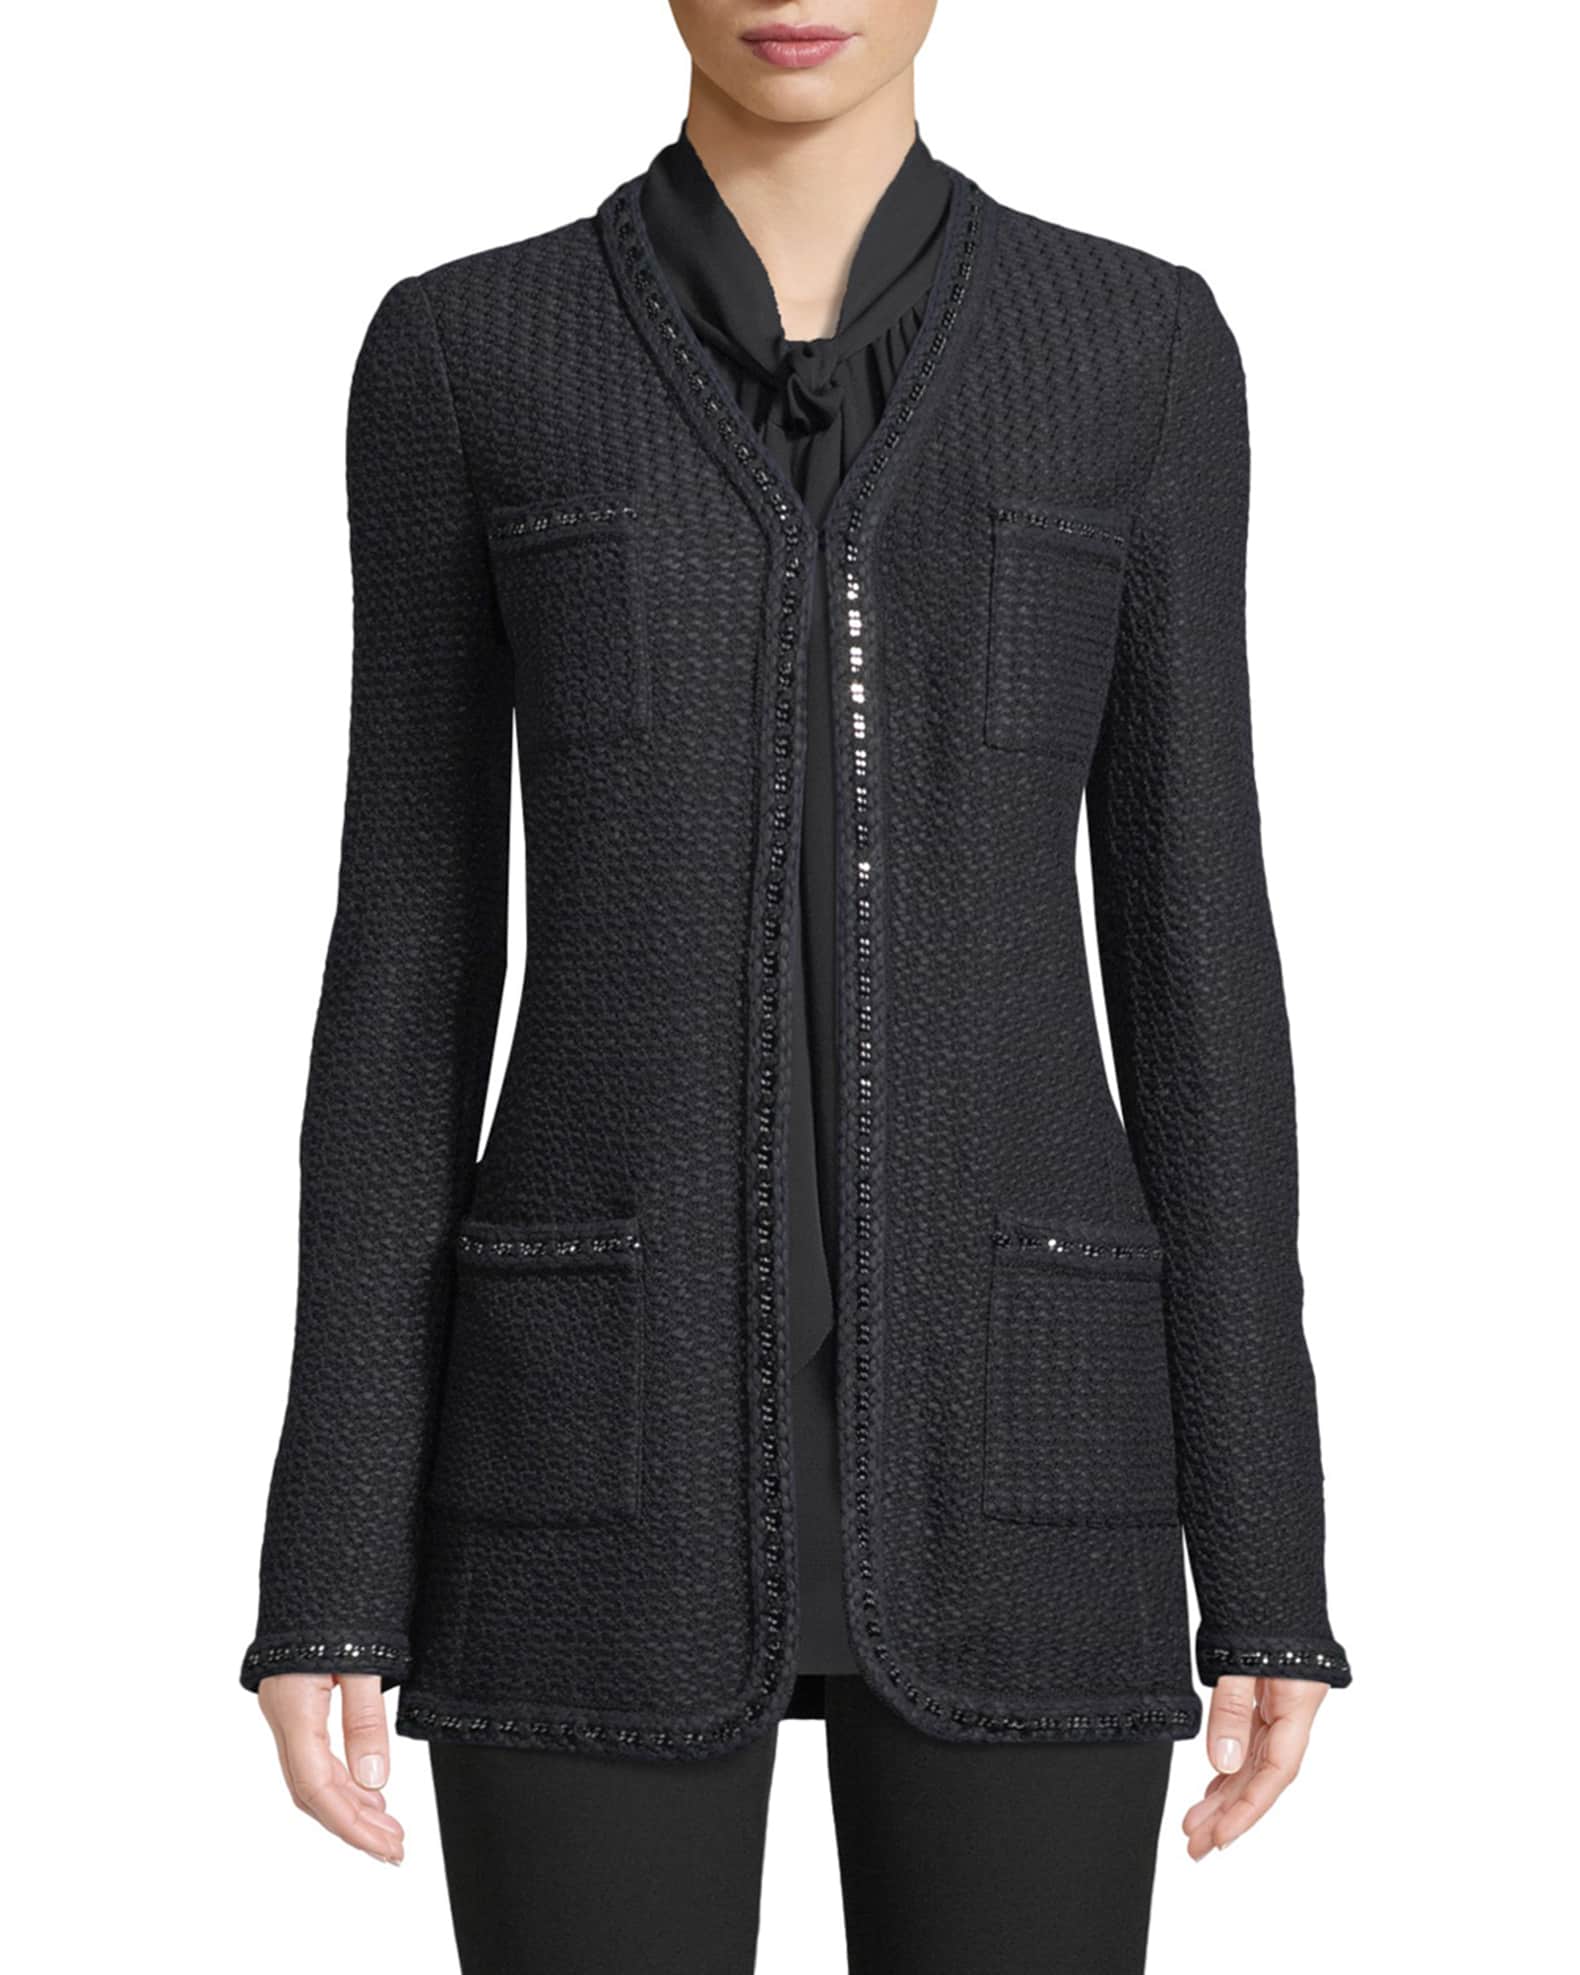 Adina Knit 4-Pocket Blazer Jacket with Chain Braid Trim 0